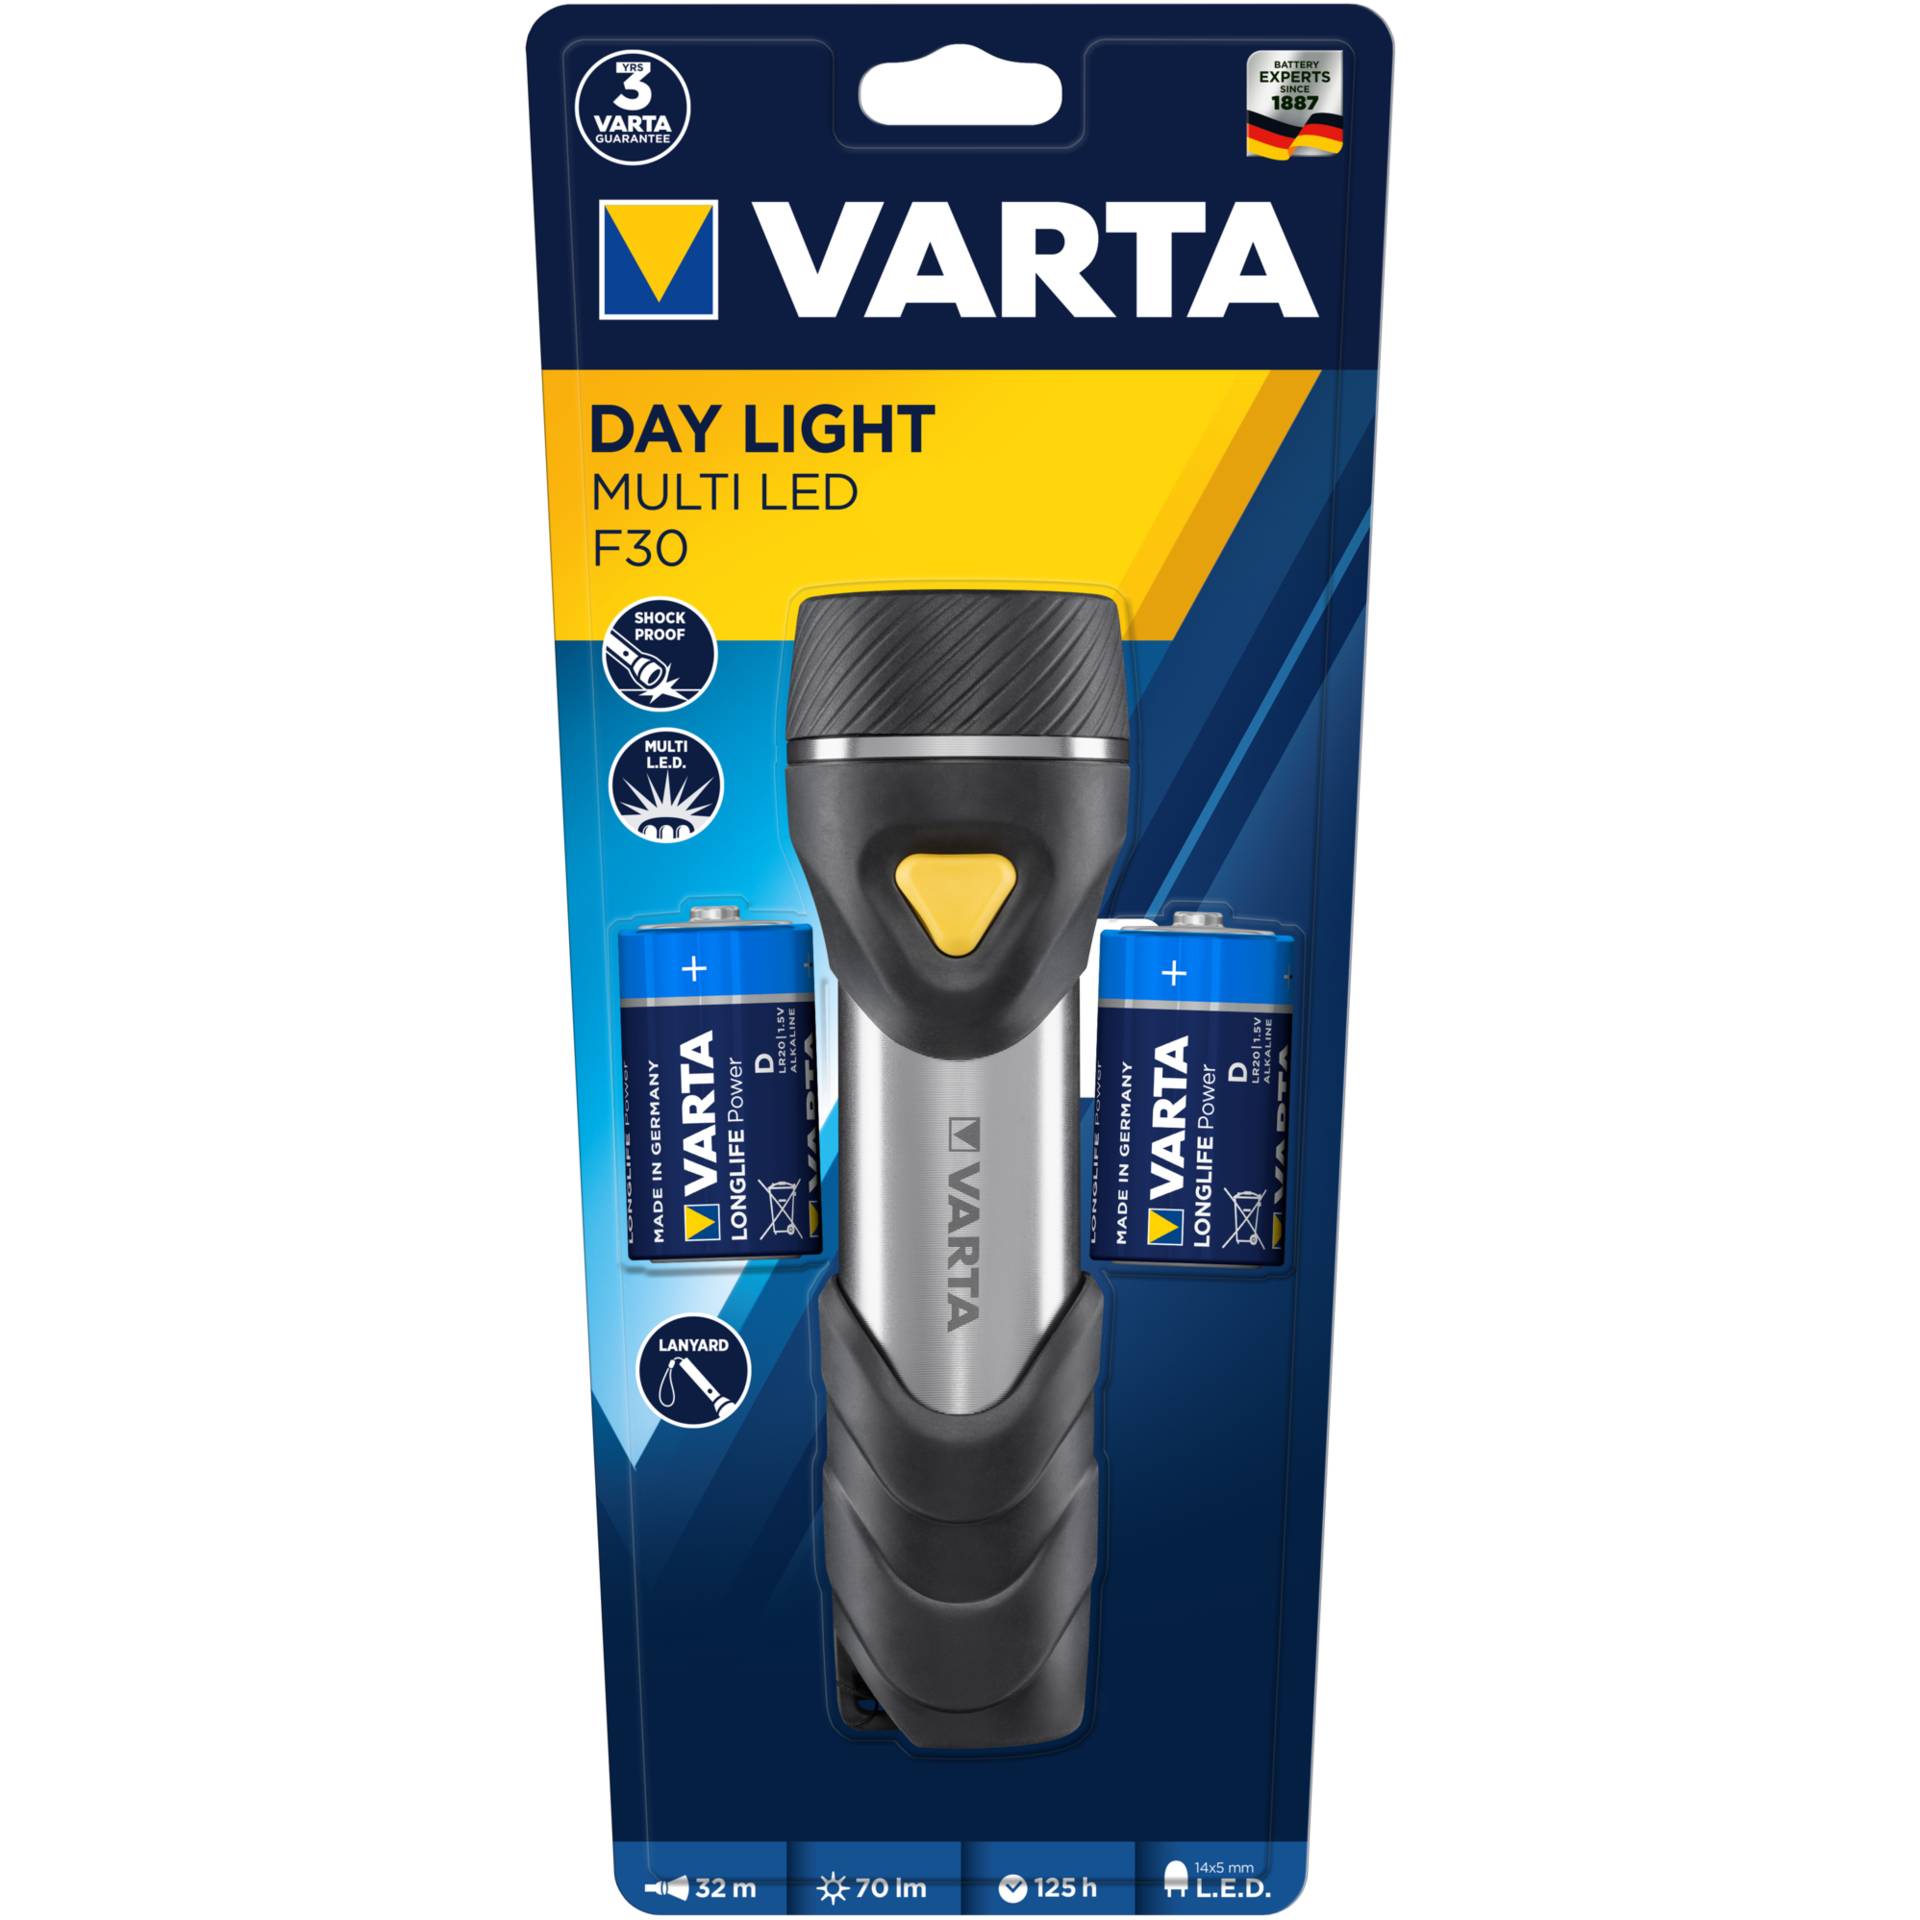 Varta Day Light Multi LED F30 torcia con 14 x 5mm LEDs